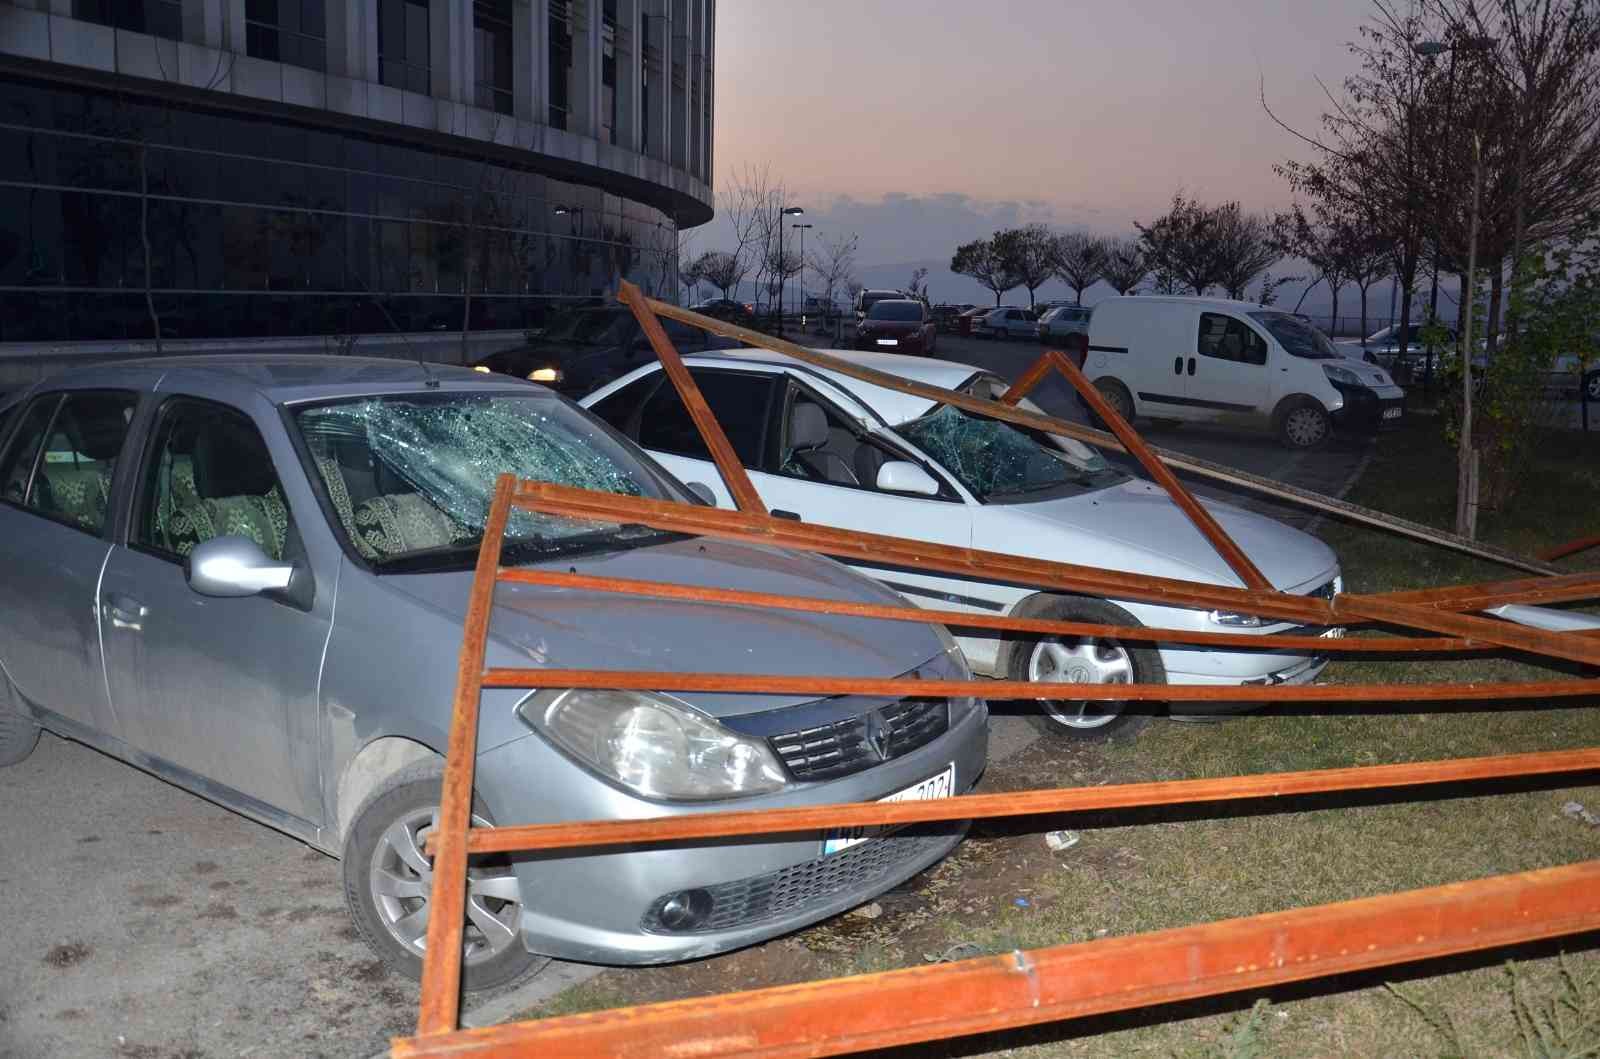 Şiddetli rüzgarın söktüğü çatı otomobillerin üzerine düştü #kahramanmaras